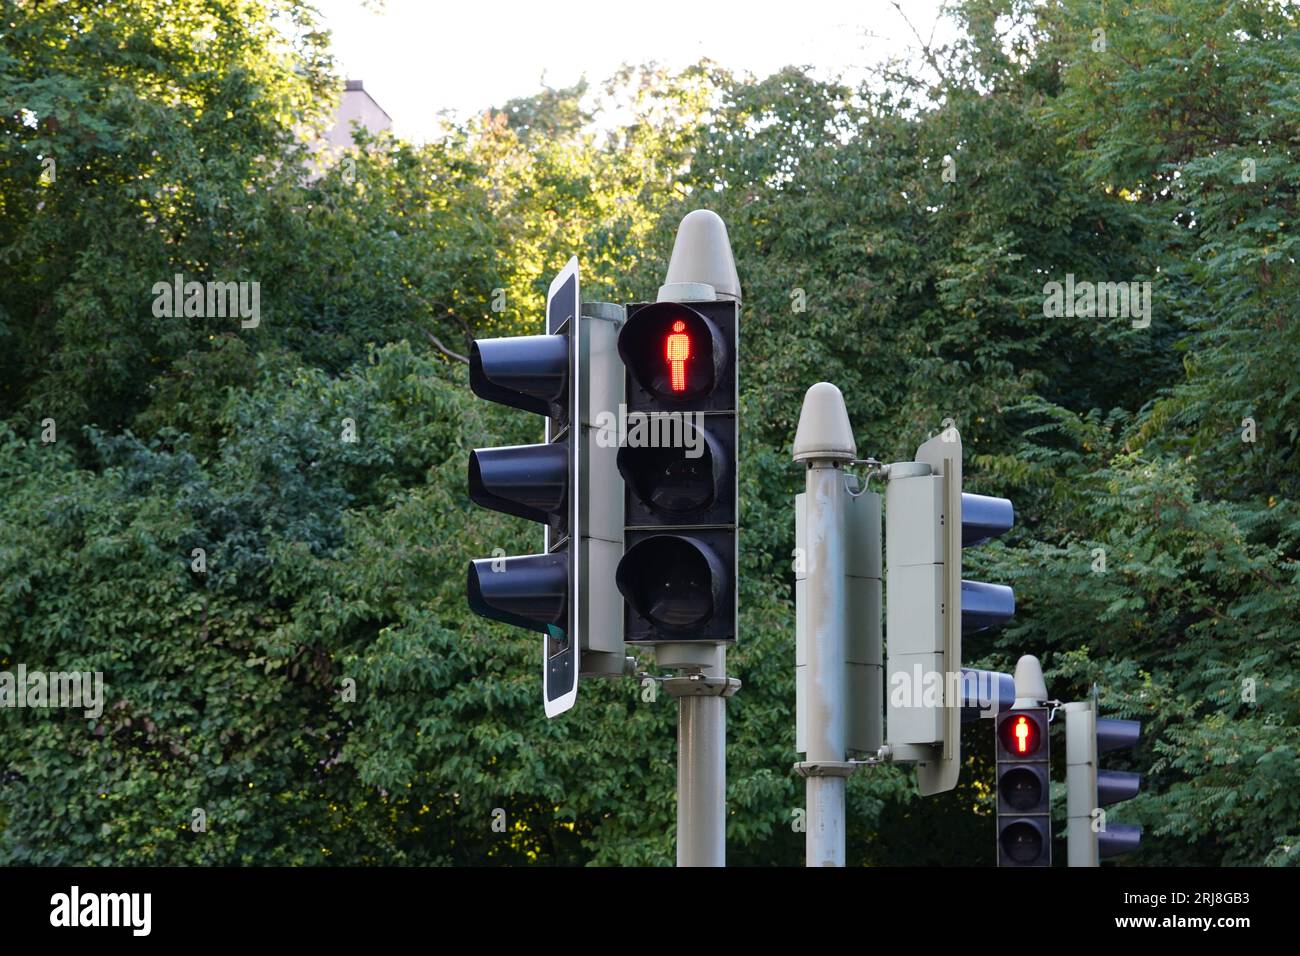 Vue sur le feu de circulation piéton avec le signal d'arrêt rouge en forme d'homme. Derrière se trouvent d'autres sémaphores et une végétation dense verte et des arbres. Banque D'Images